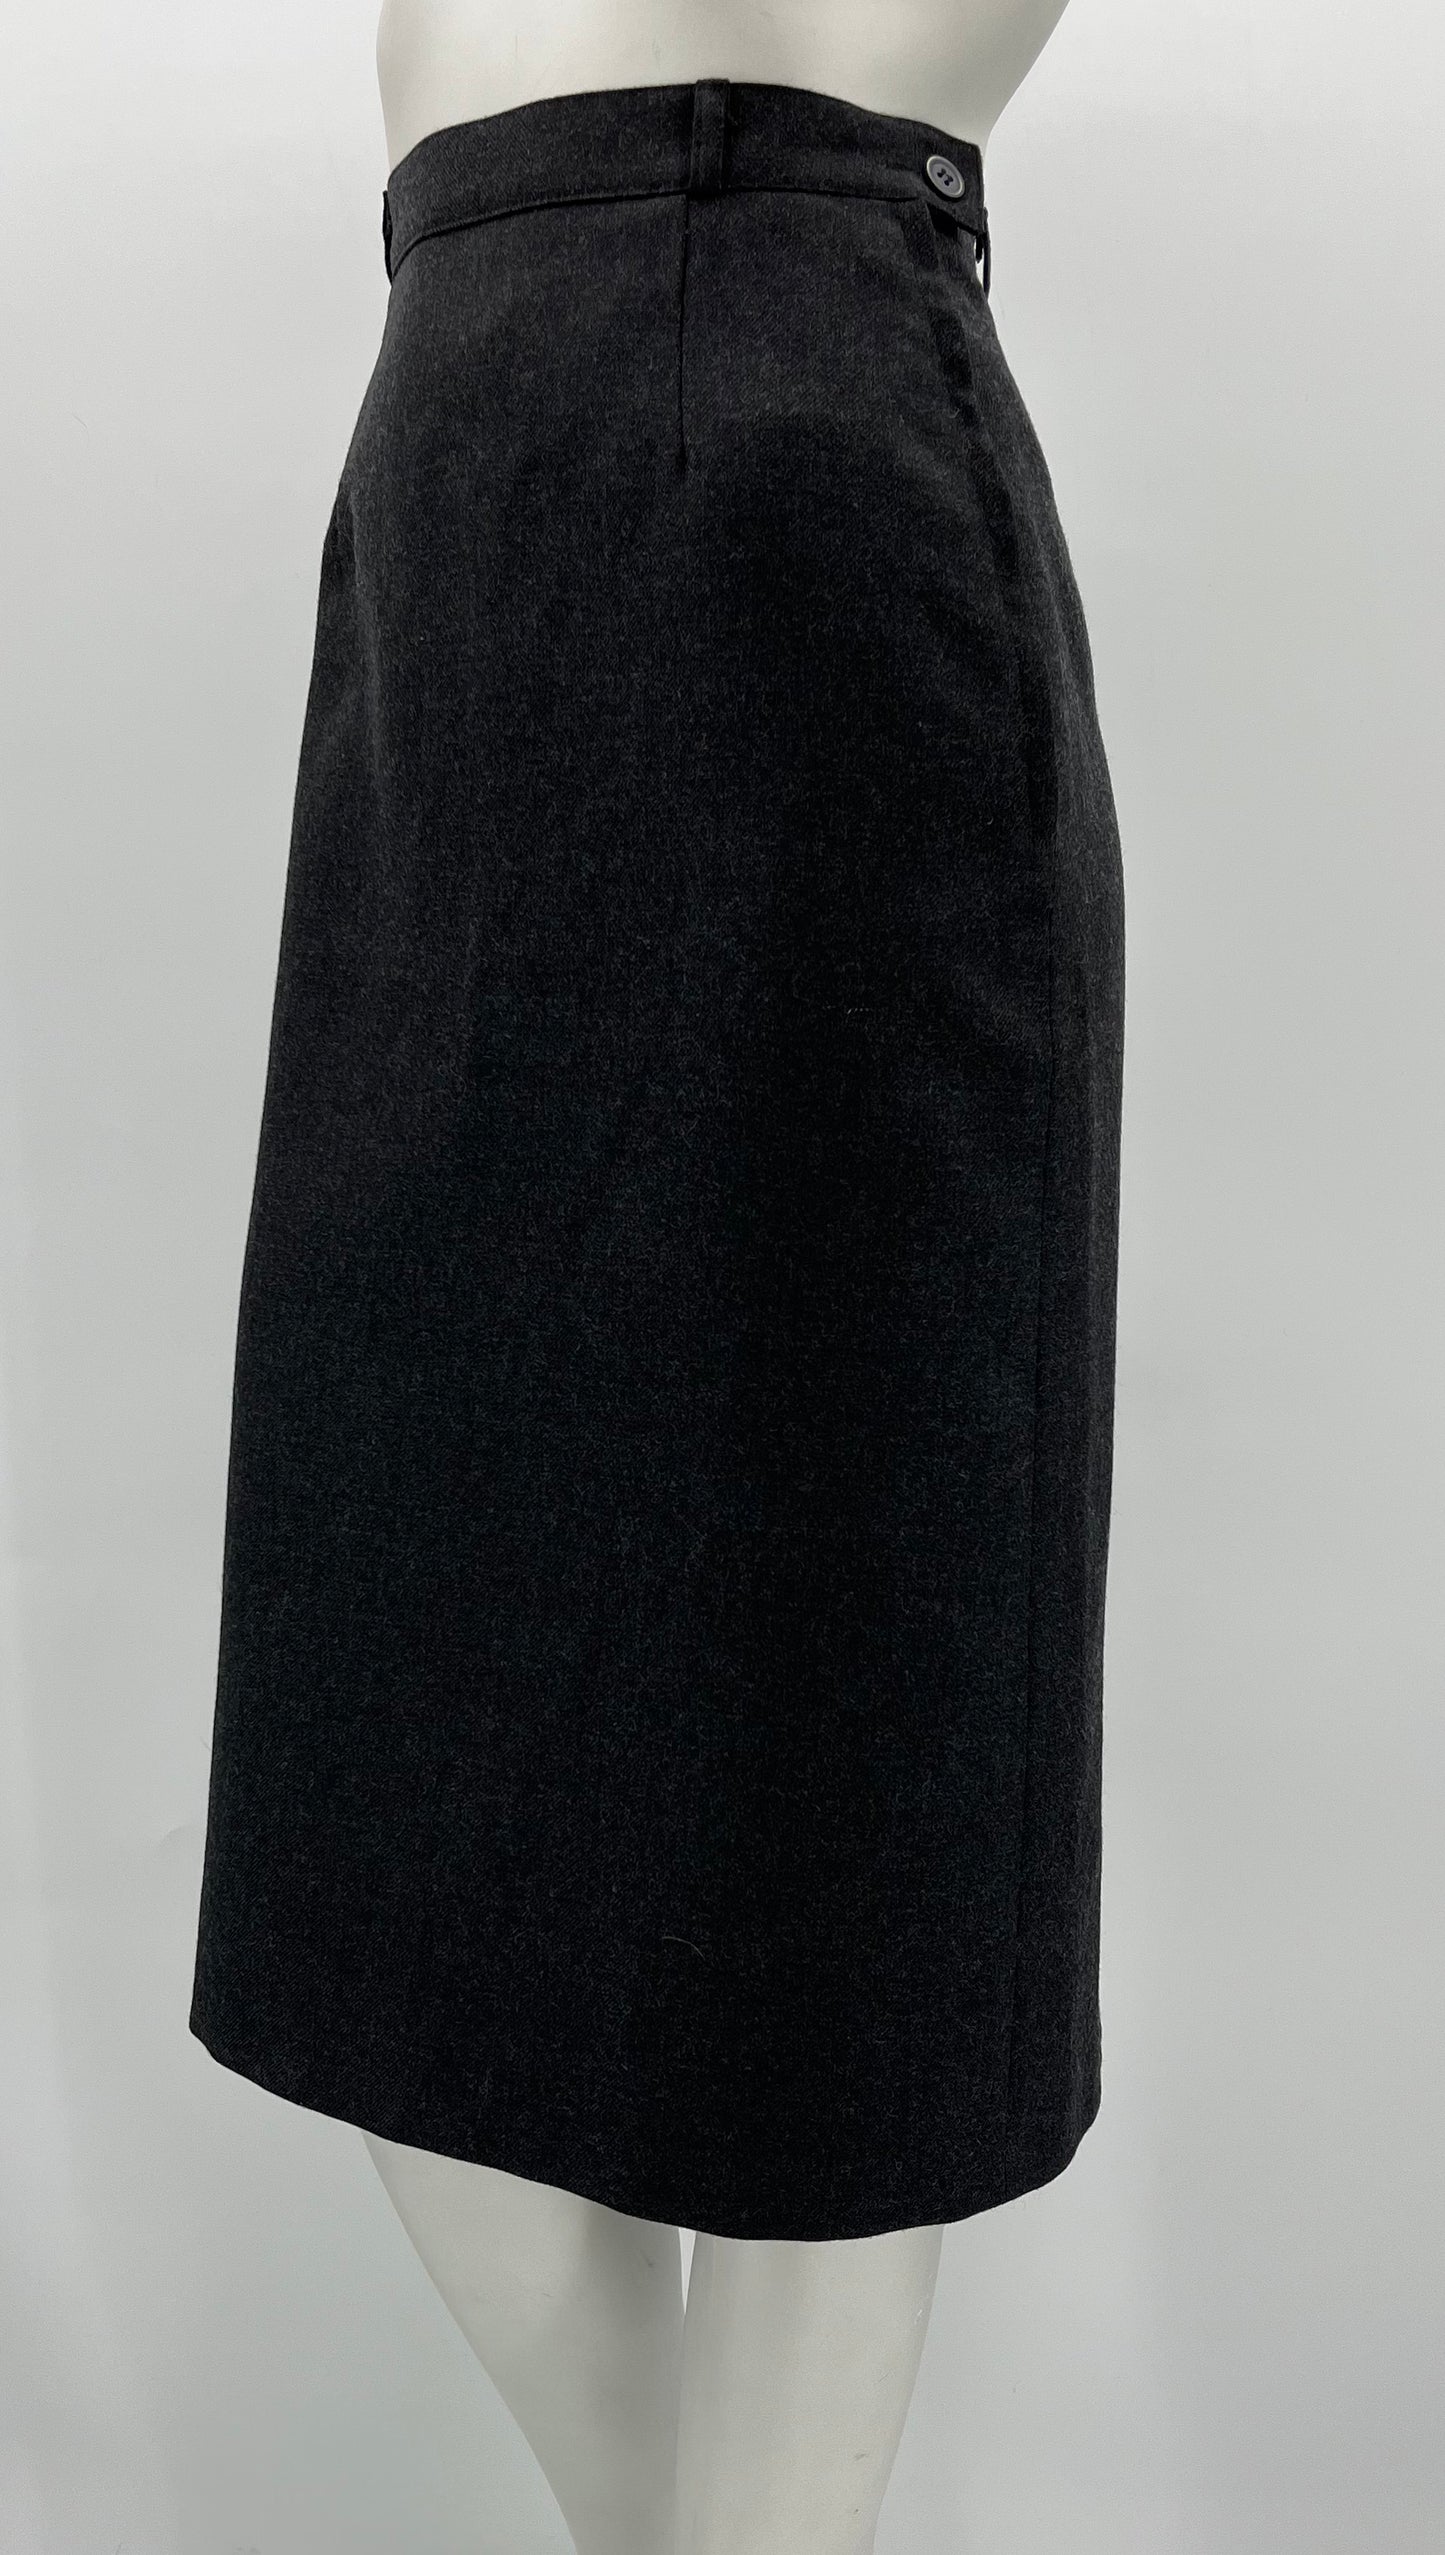 Tummanharmaa suora hame sis.villaa, 80-90-luku, vyöt.ymp. 64cm, kokoarvio 34